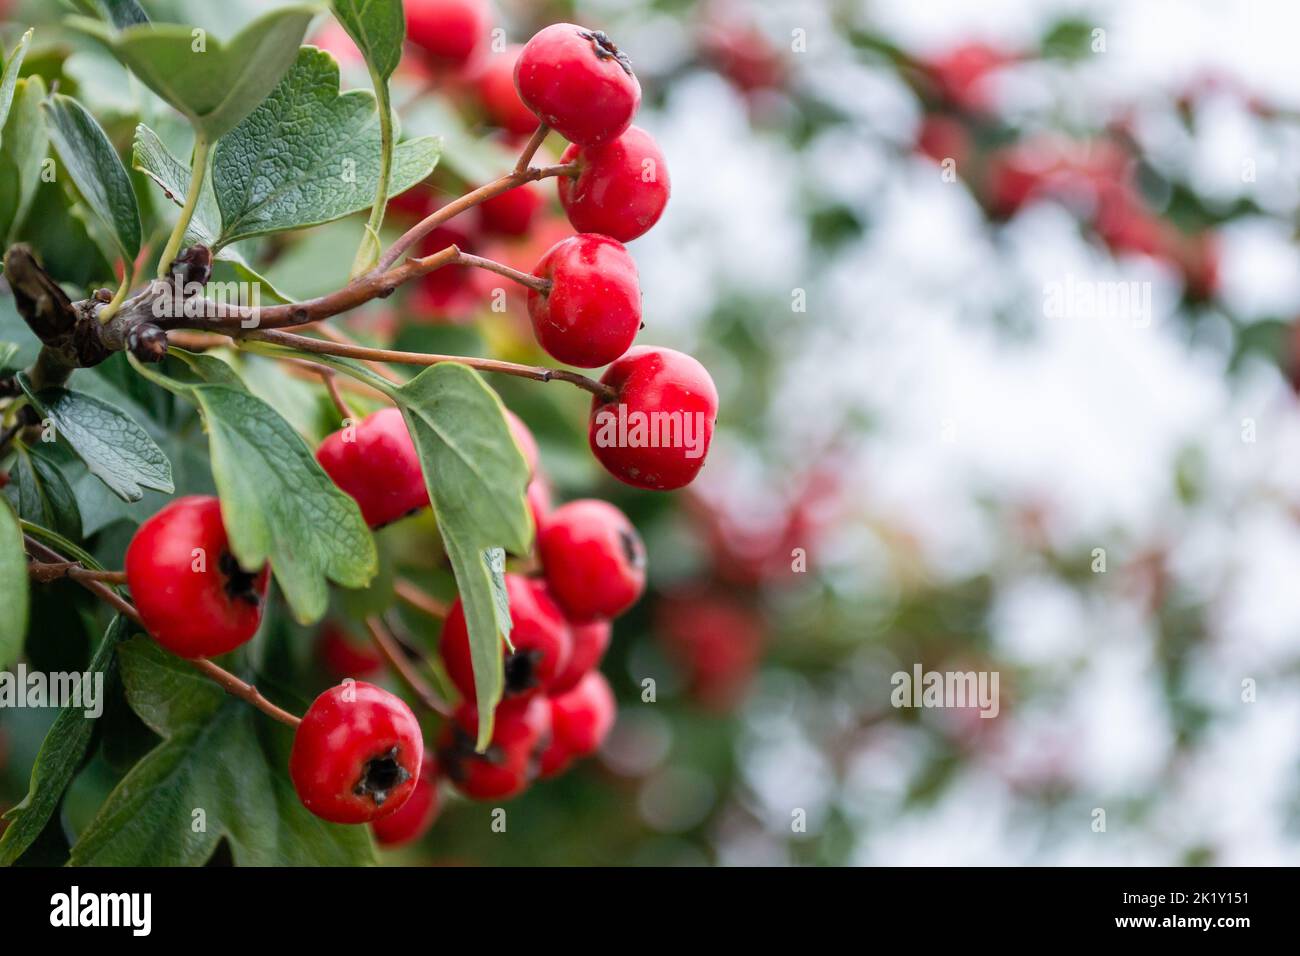 Crataegus monogyna albero con tanti frutti. Crataegus coccinea frutti rossi sani e ornamentali, bellissimi rami di albero con foglie verdi. Foto Stock